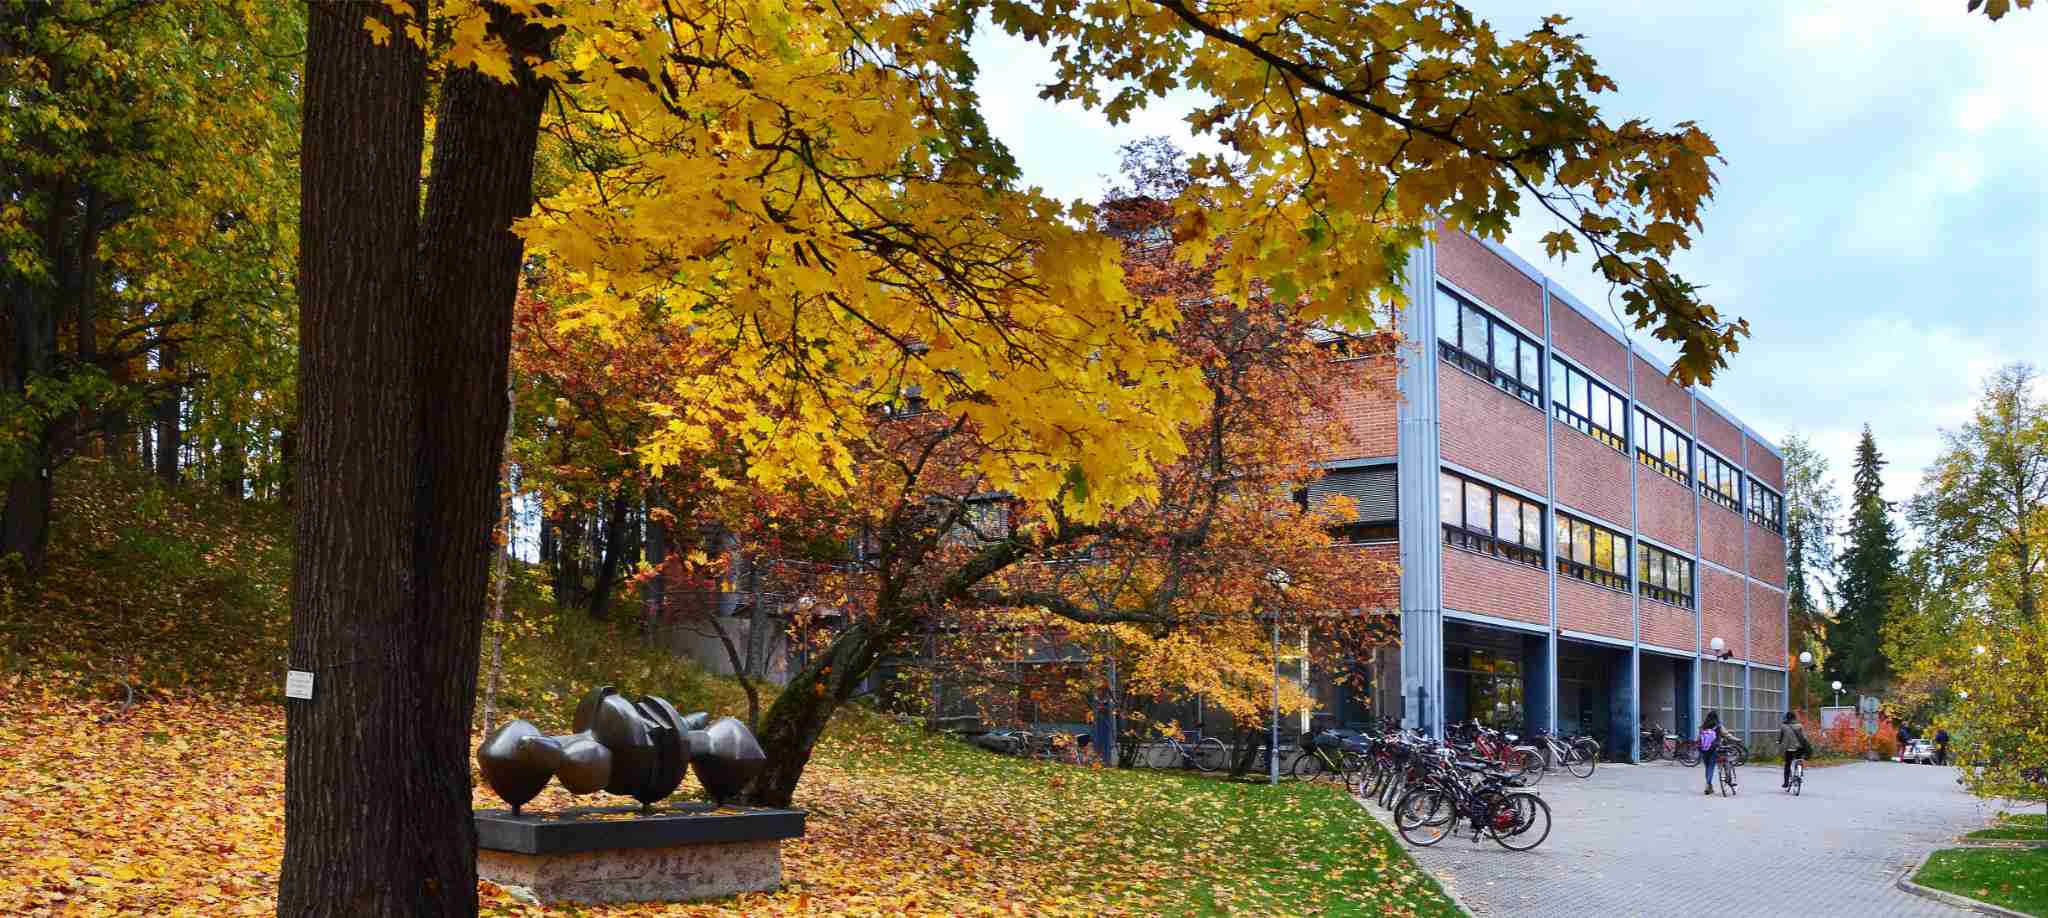 Đại học Jyväskylä